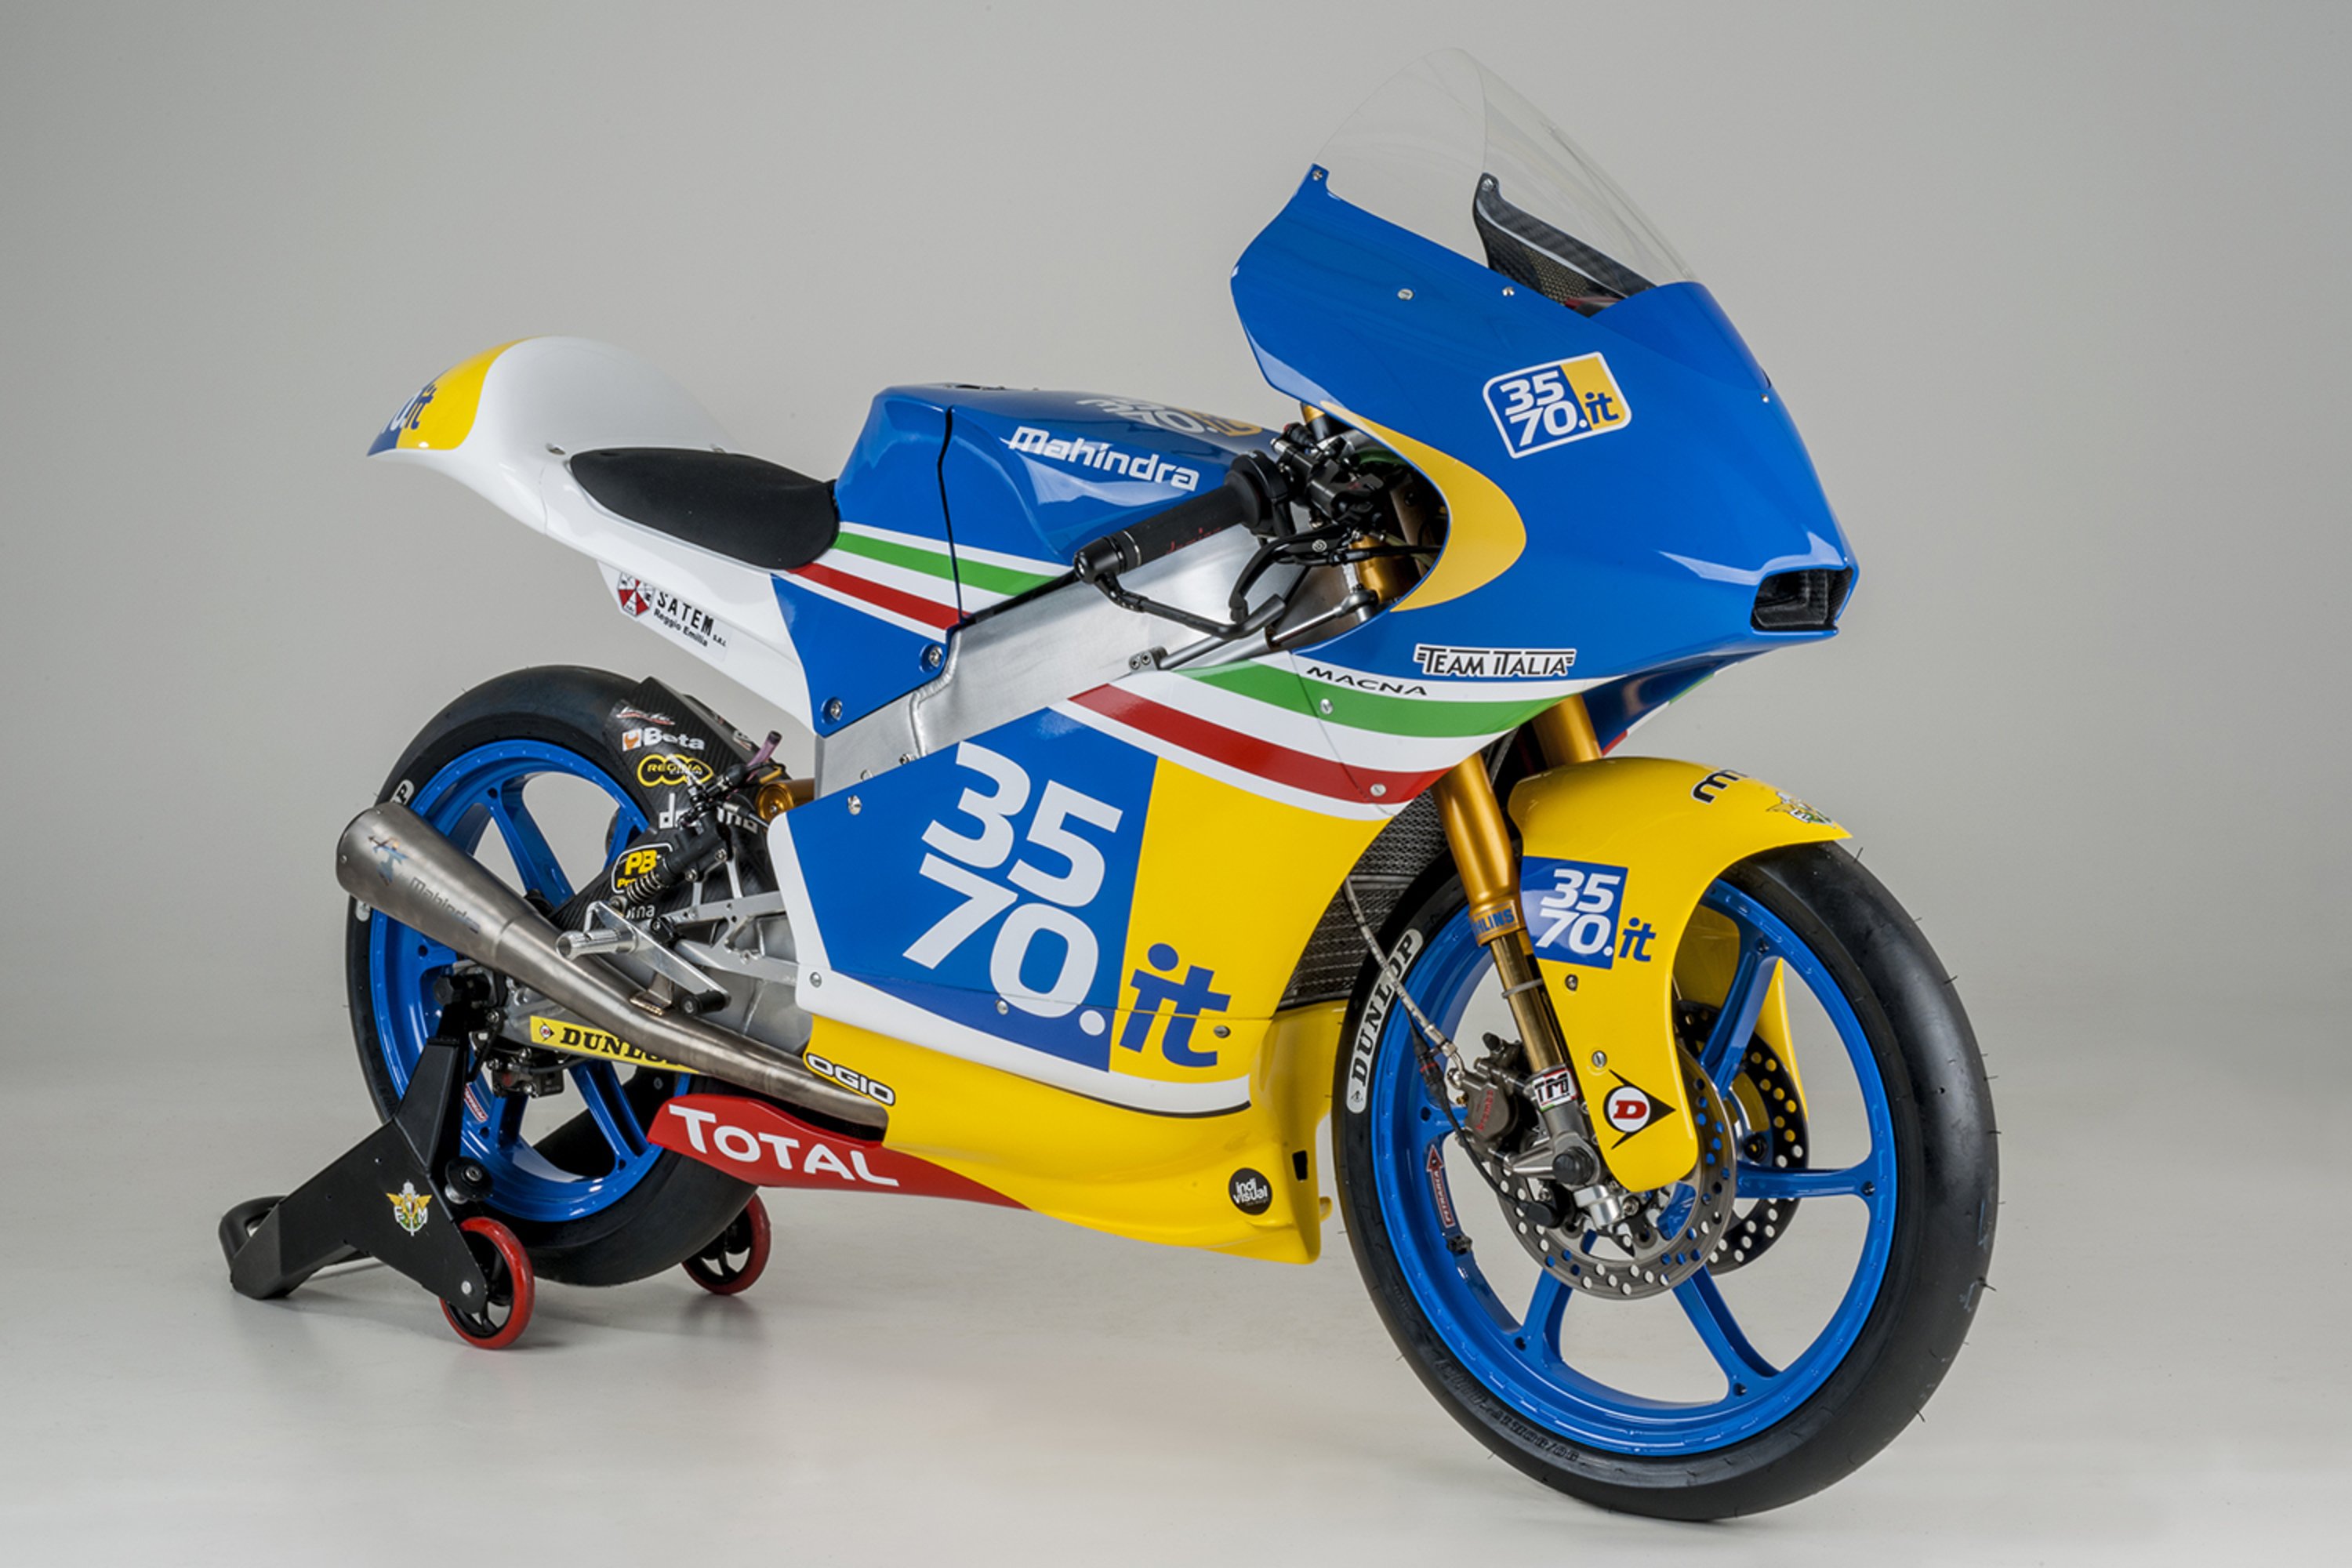 Presentato oggi il 3570 Team Italia Moto3